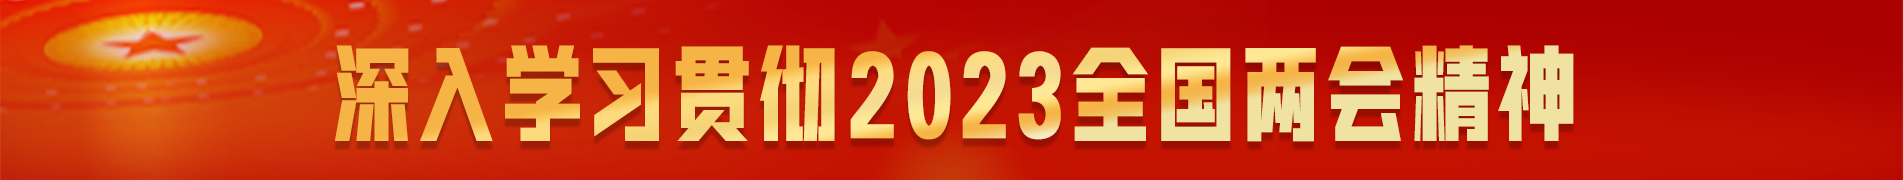 奋力谱写中国式现代化广西篇章——2023全国两会特别报道